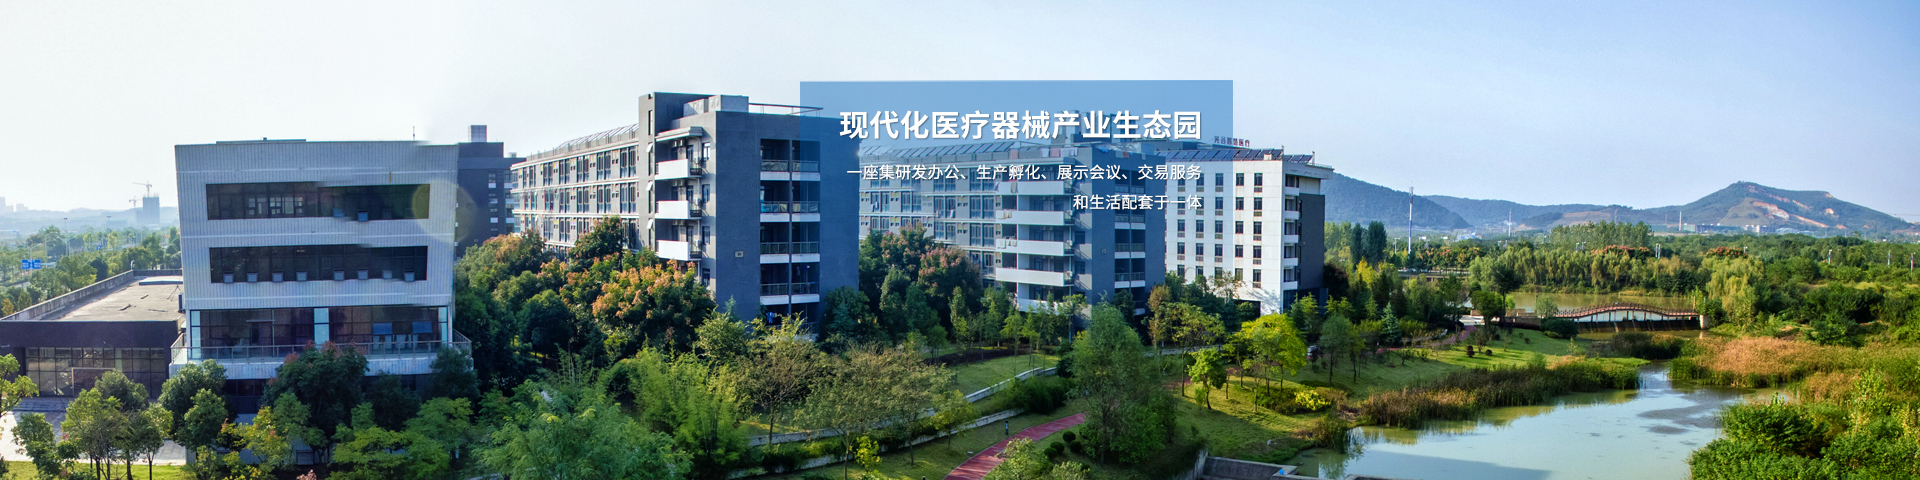 武汉高科医疗器械园有限公司